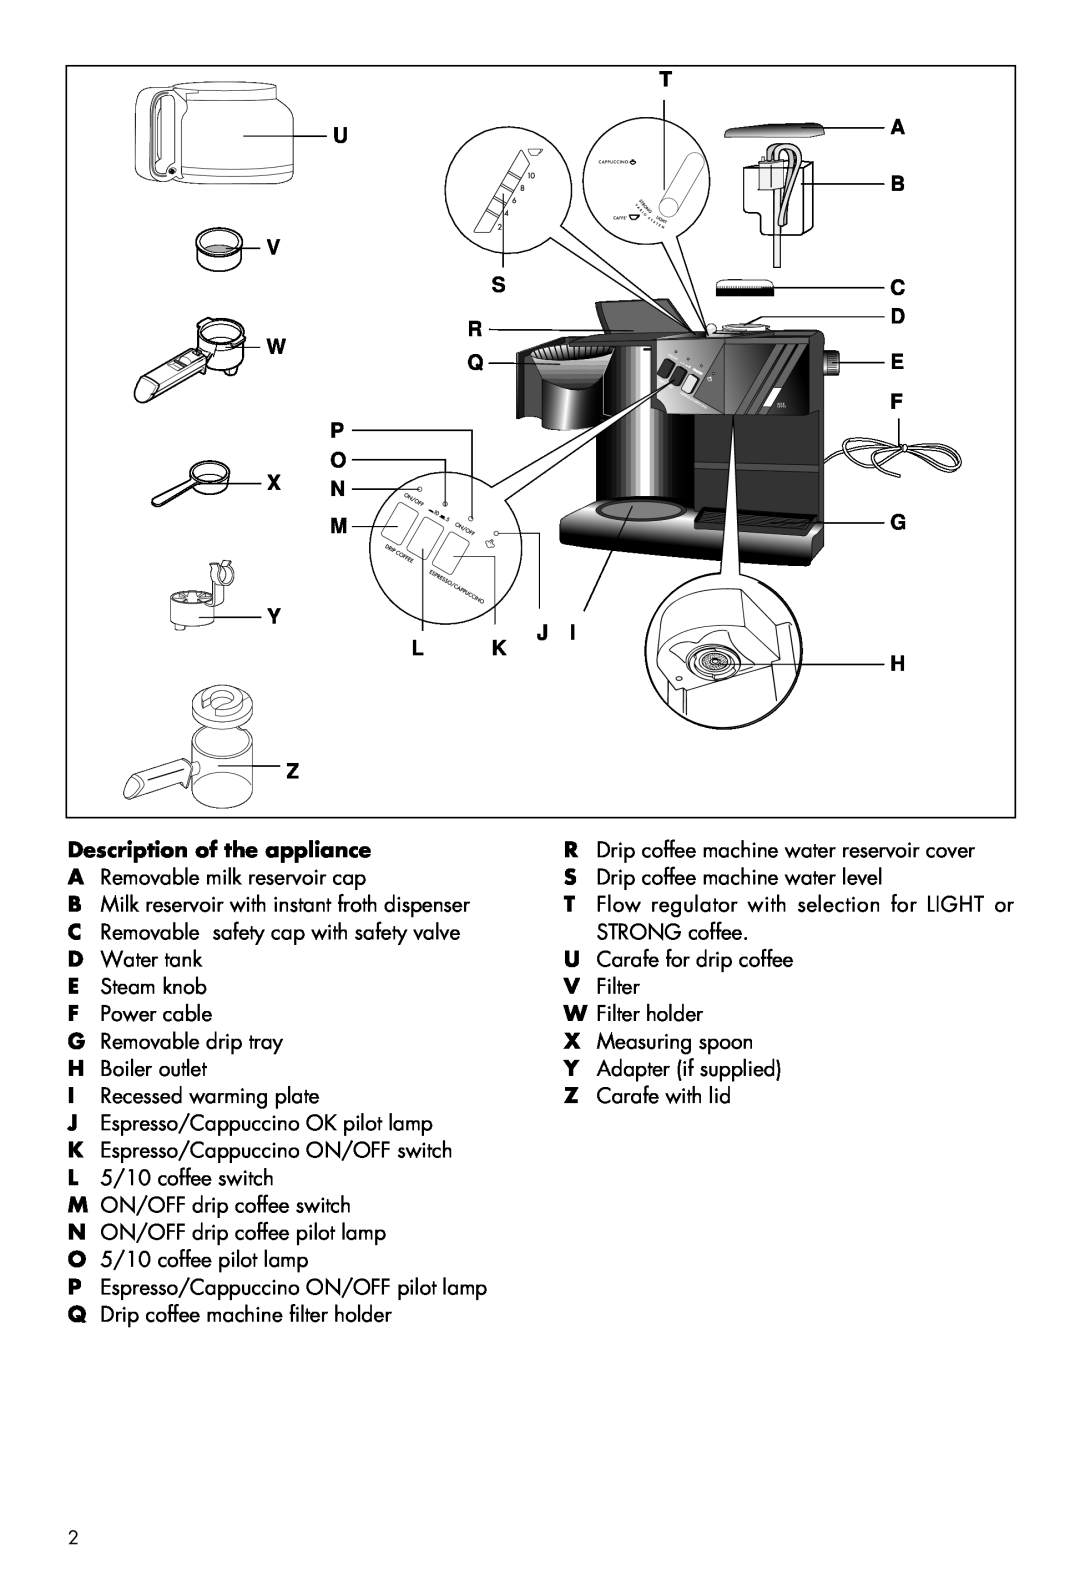 DeLonghi BC080 manual U V W P O X N M Y L Z, G J K H, Description of the appliance 